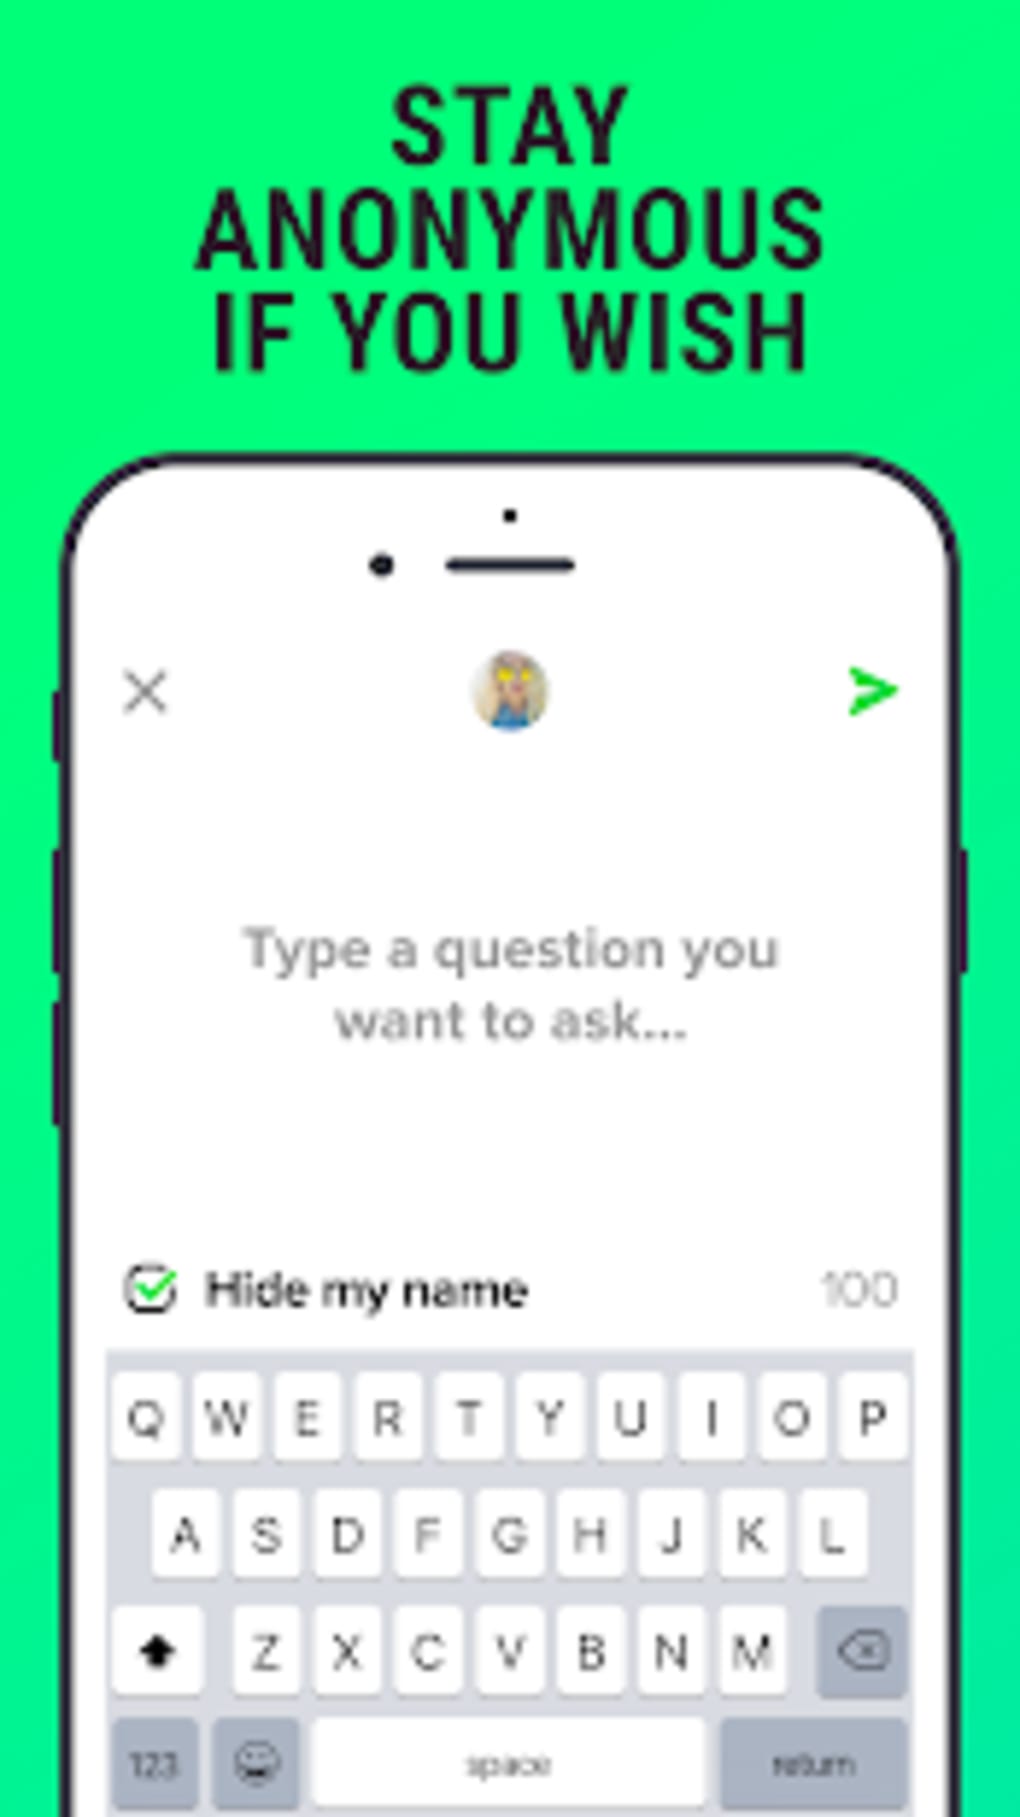 Snapchat anonym fragen stellen